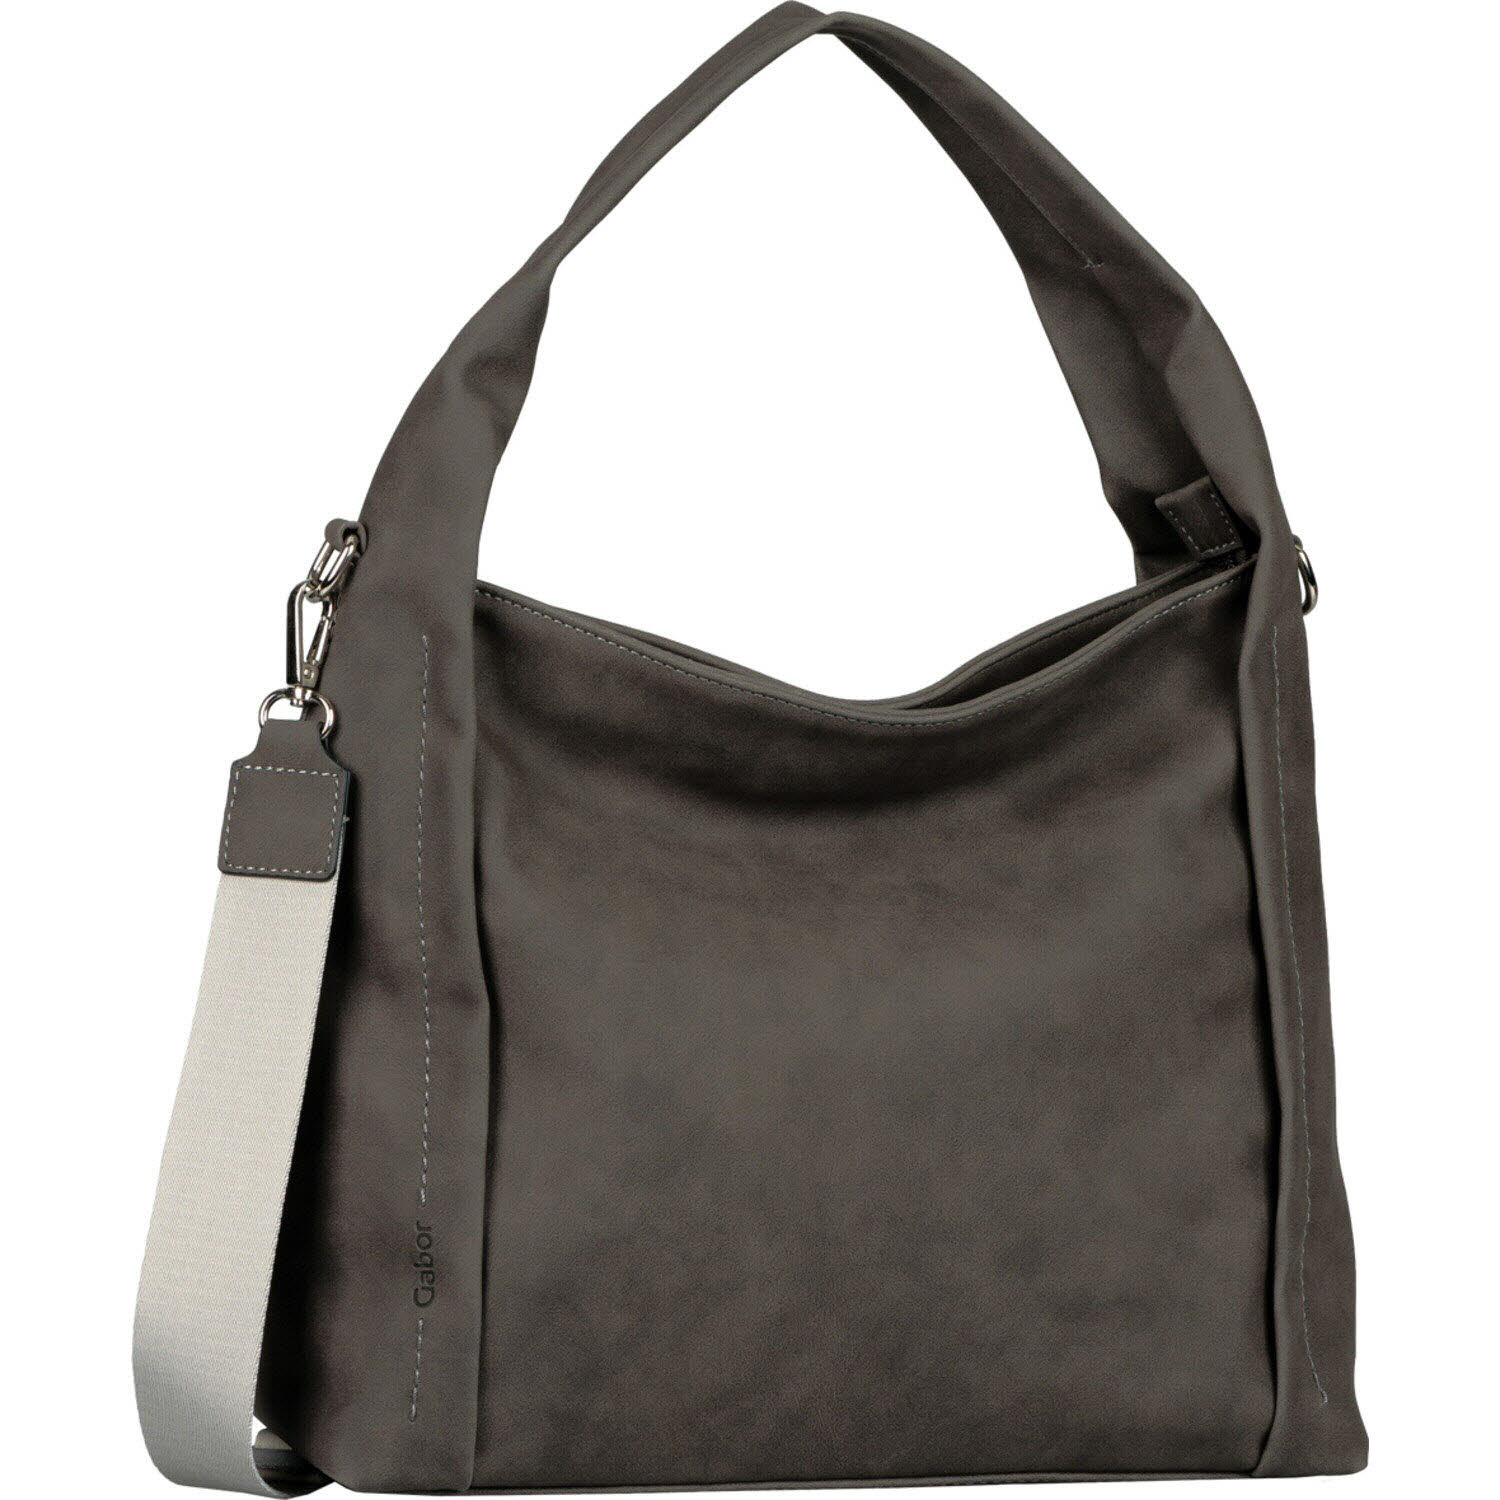 Damen Schultertasche von Gabor Bags auch in Grau erhältlich